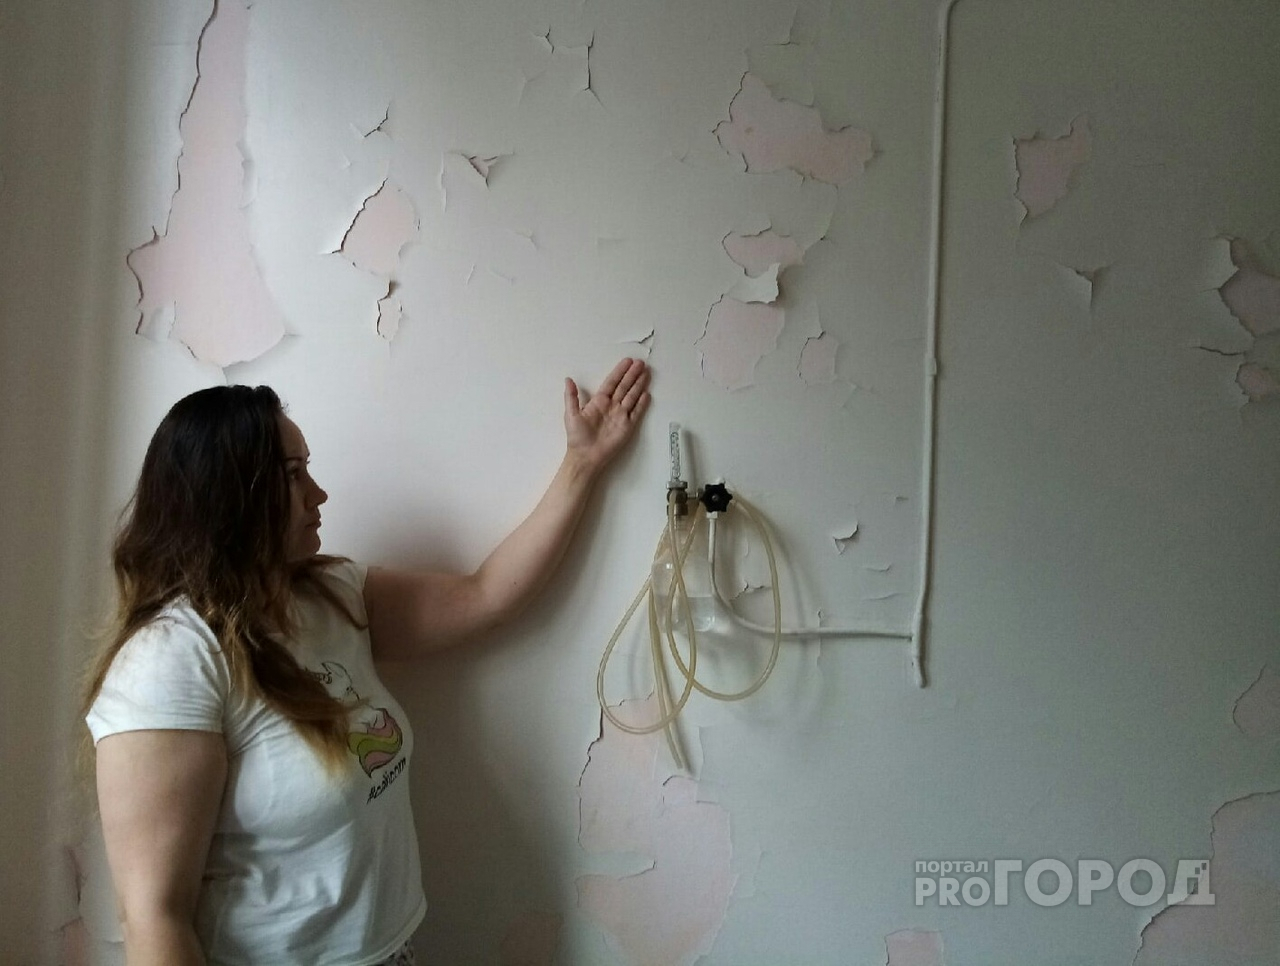 Мама о детском стационаре Новочебоксарска: "Стены обшарпаны, вместо подушек сумки"